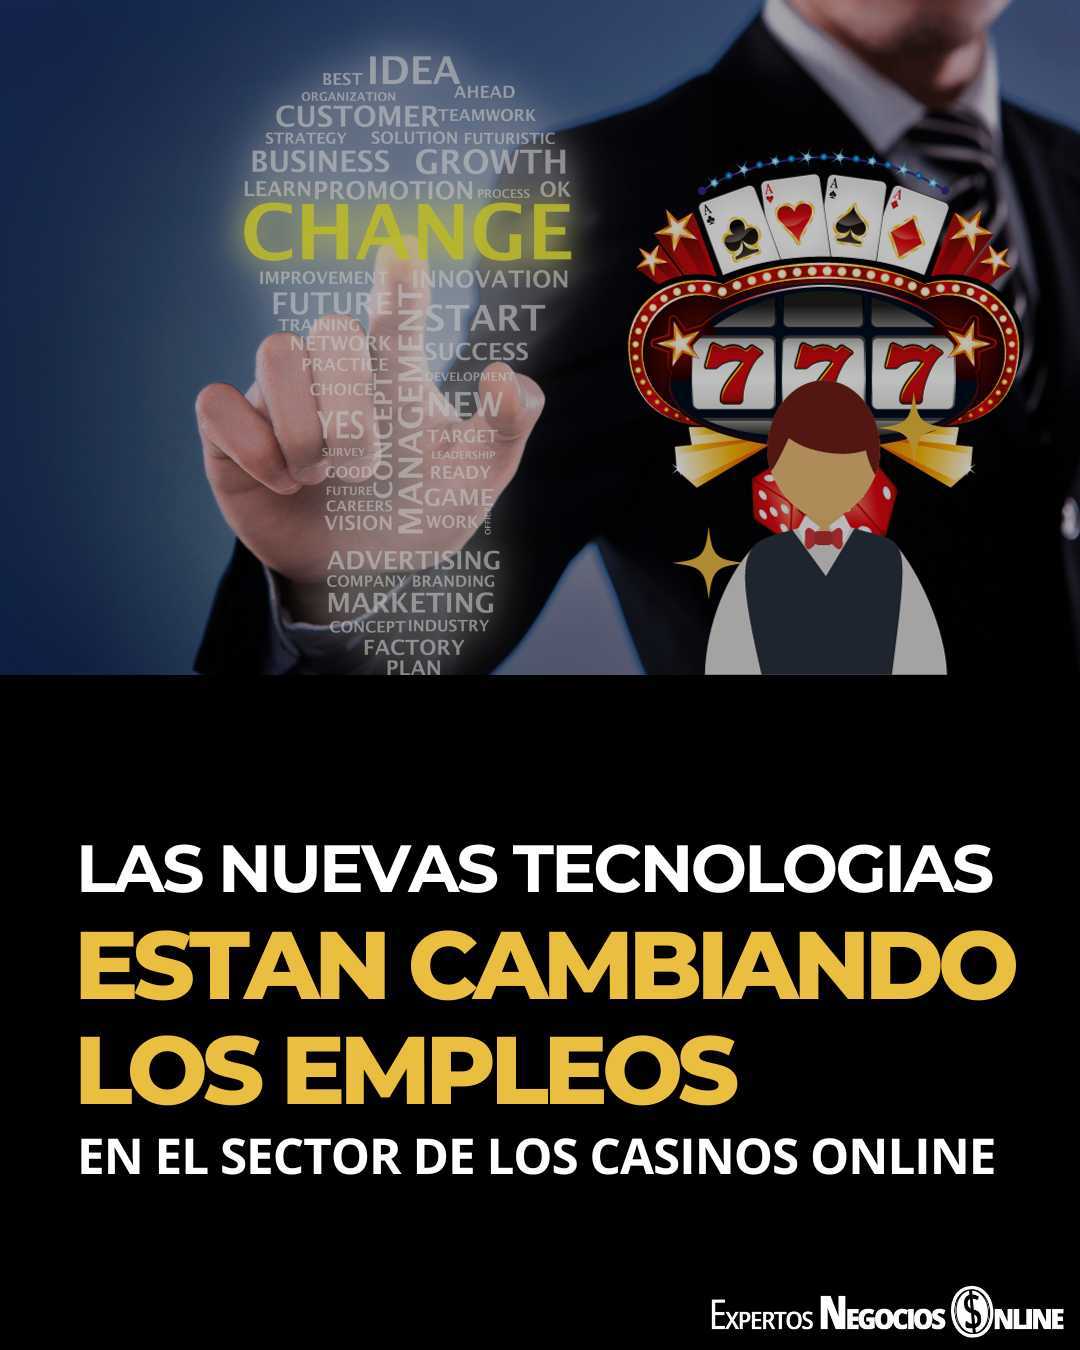 Las nuevas tecnologías están cambiando los empleos en el sector de los casinos online